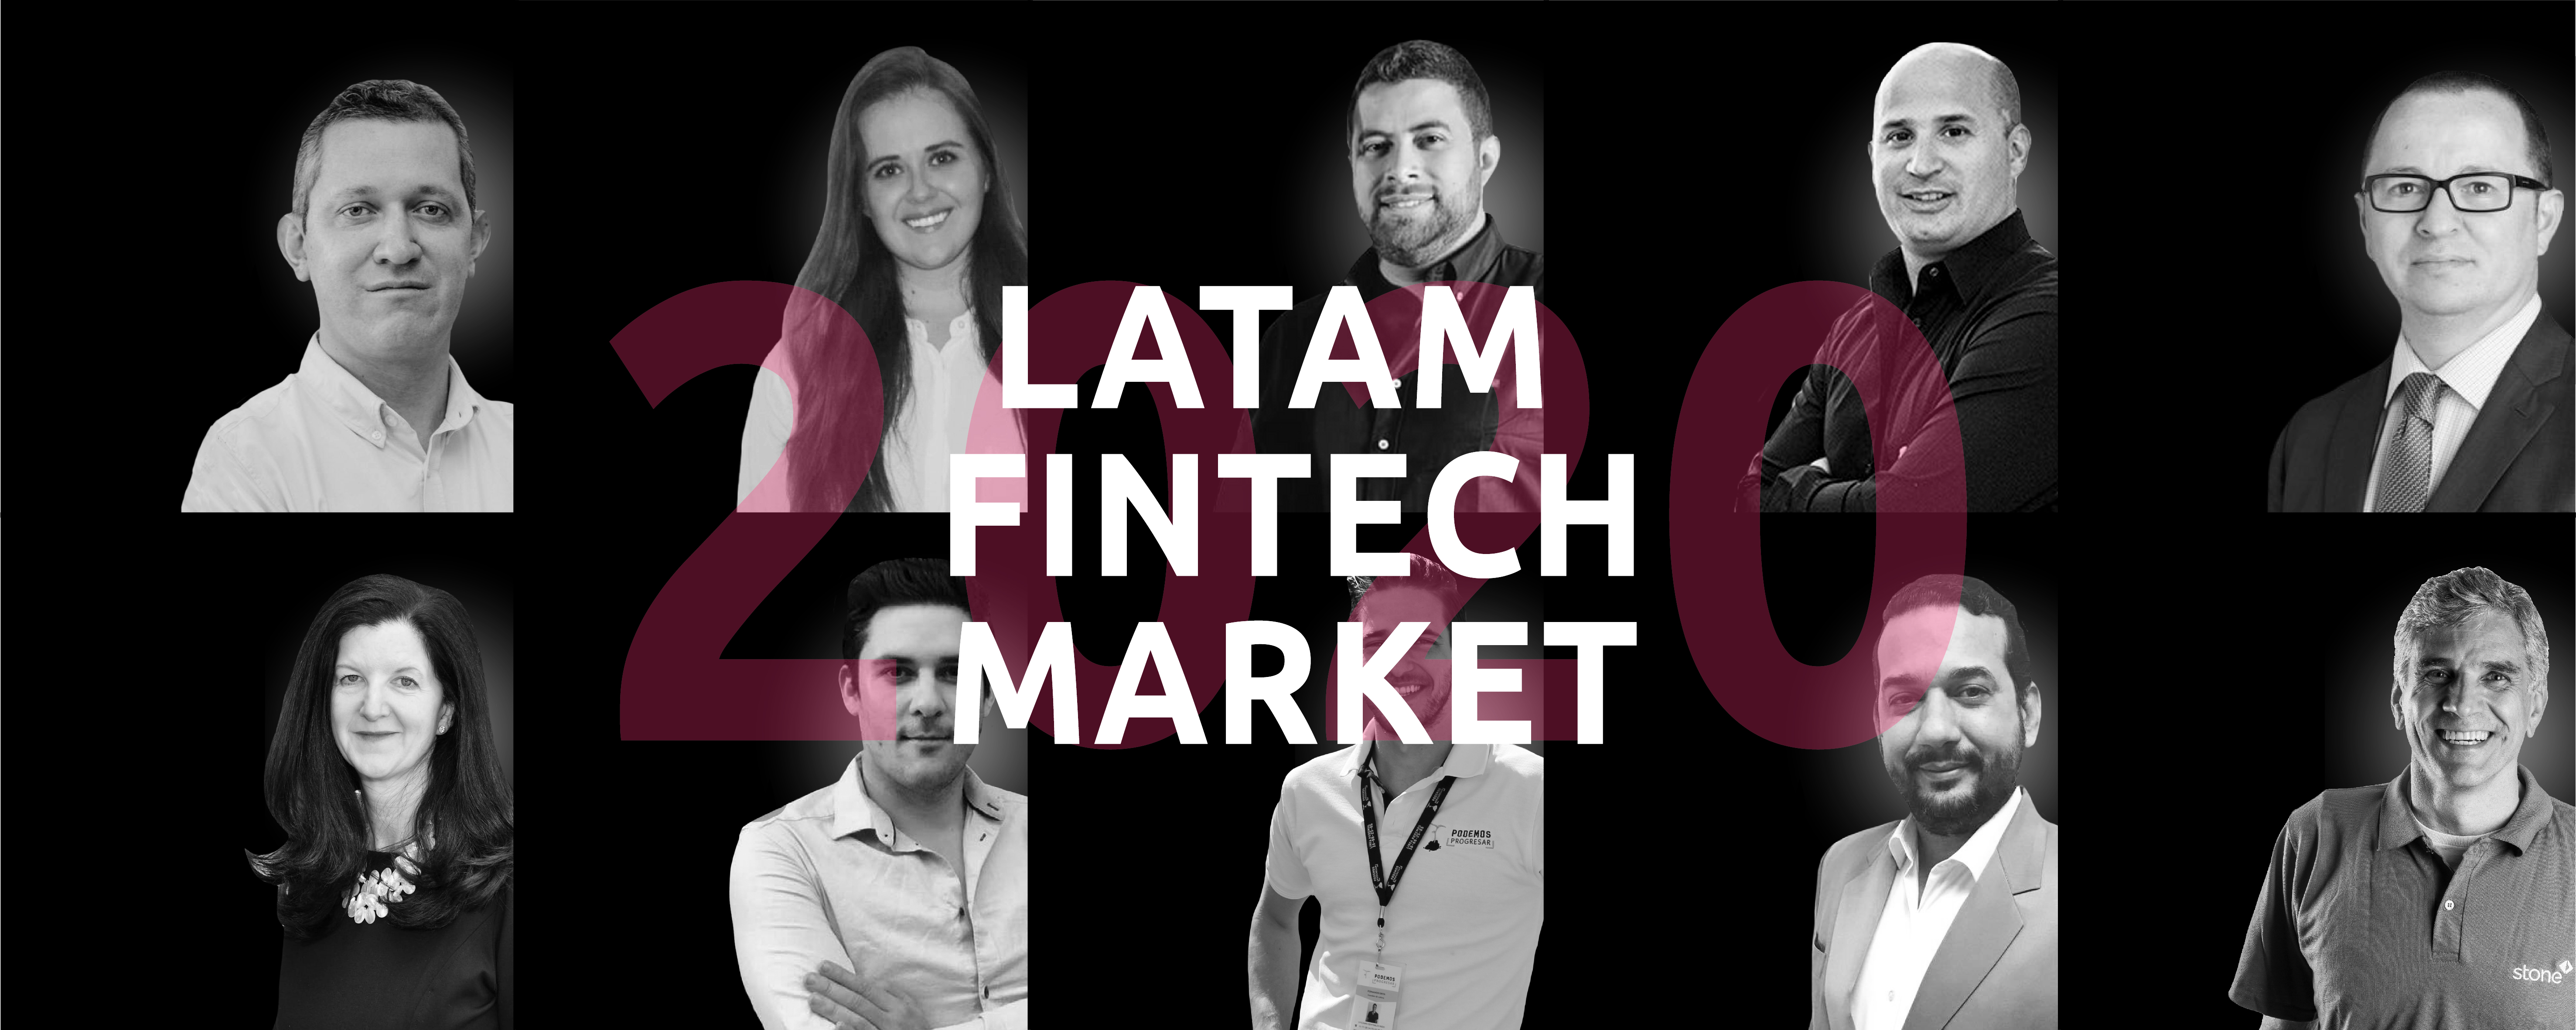 Comunicado de Prensa No. 3 del Latam Fintech Market 2020 - 27, 28 y 29 de Octubre